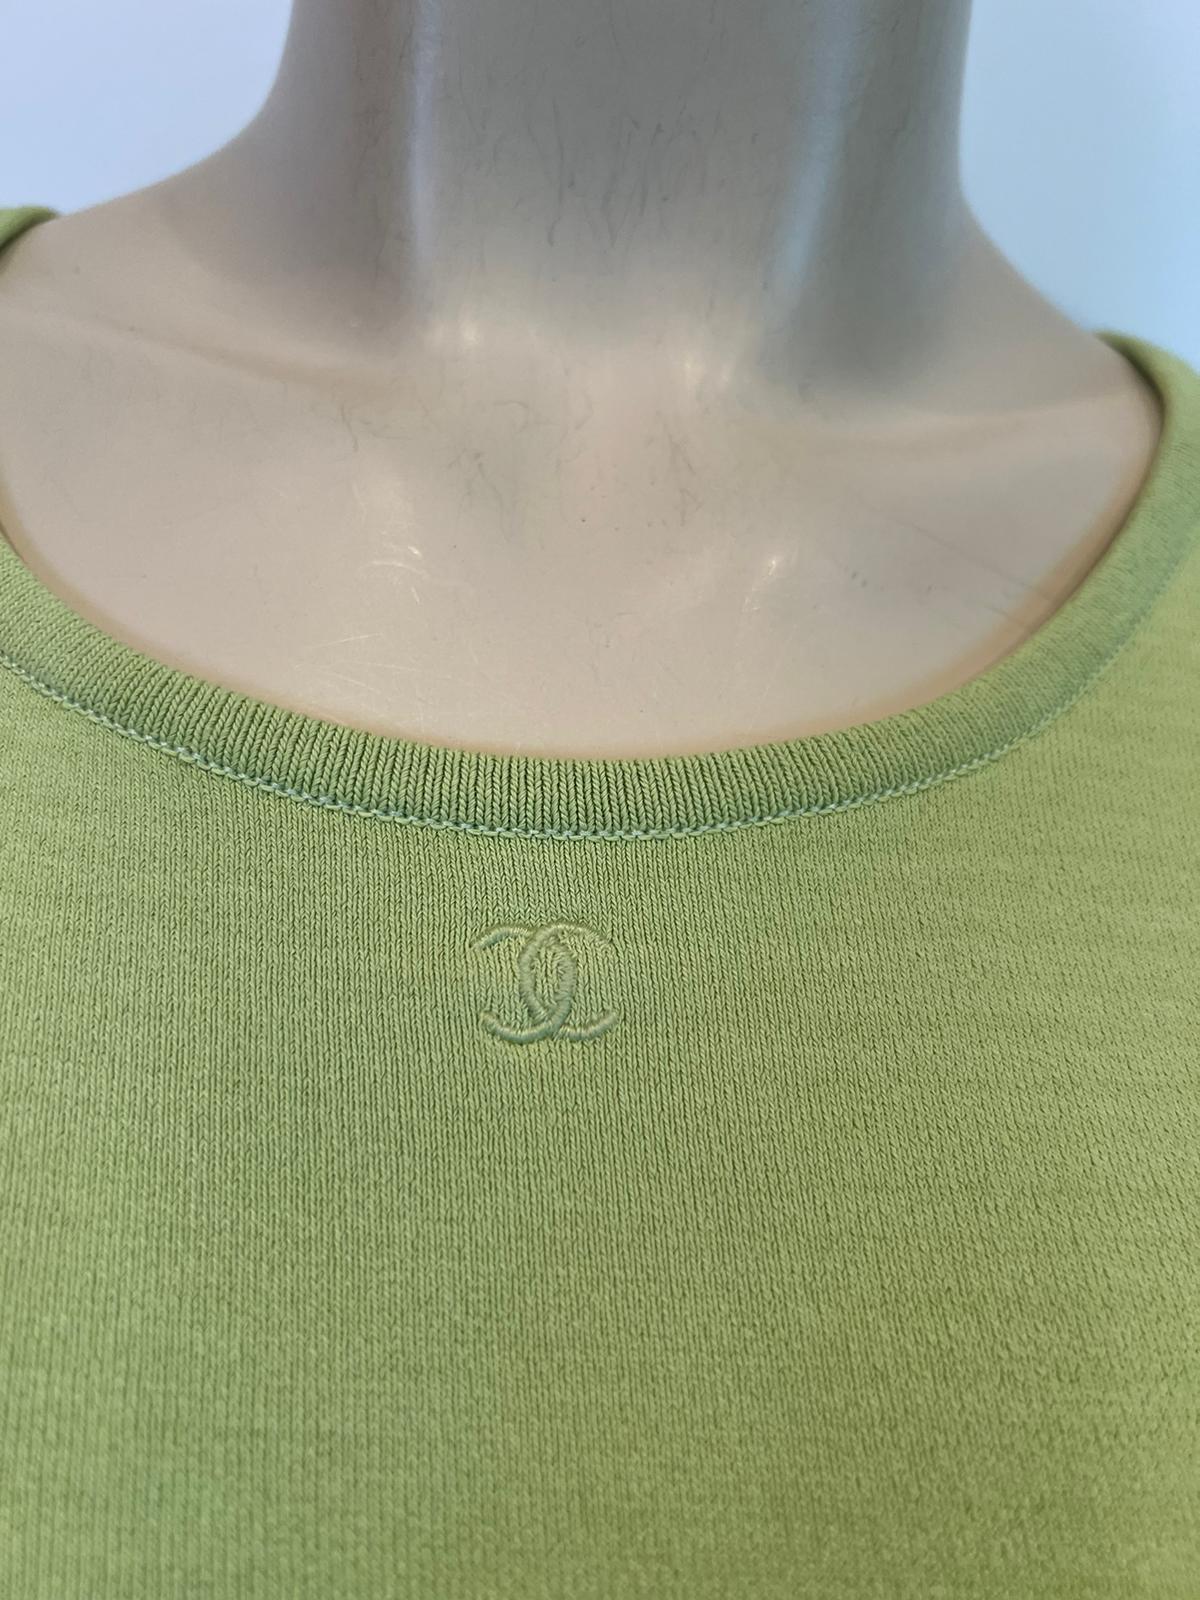 HelensChanel Vintage Chanel 98P, 1998 Spring Vintage Green Short Sleeve CC Logo Blouse Top FR 38 US 4/6